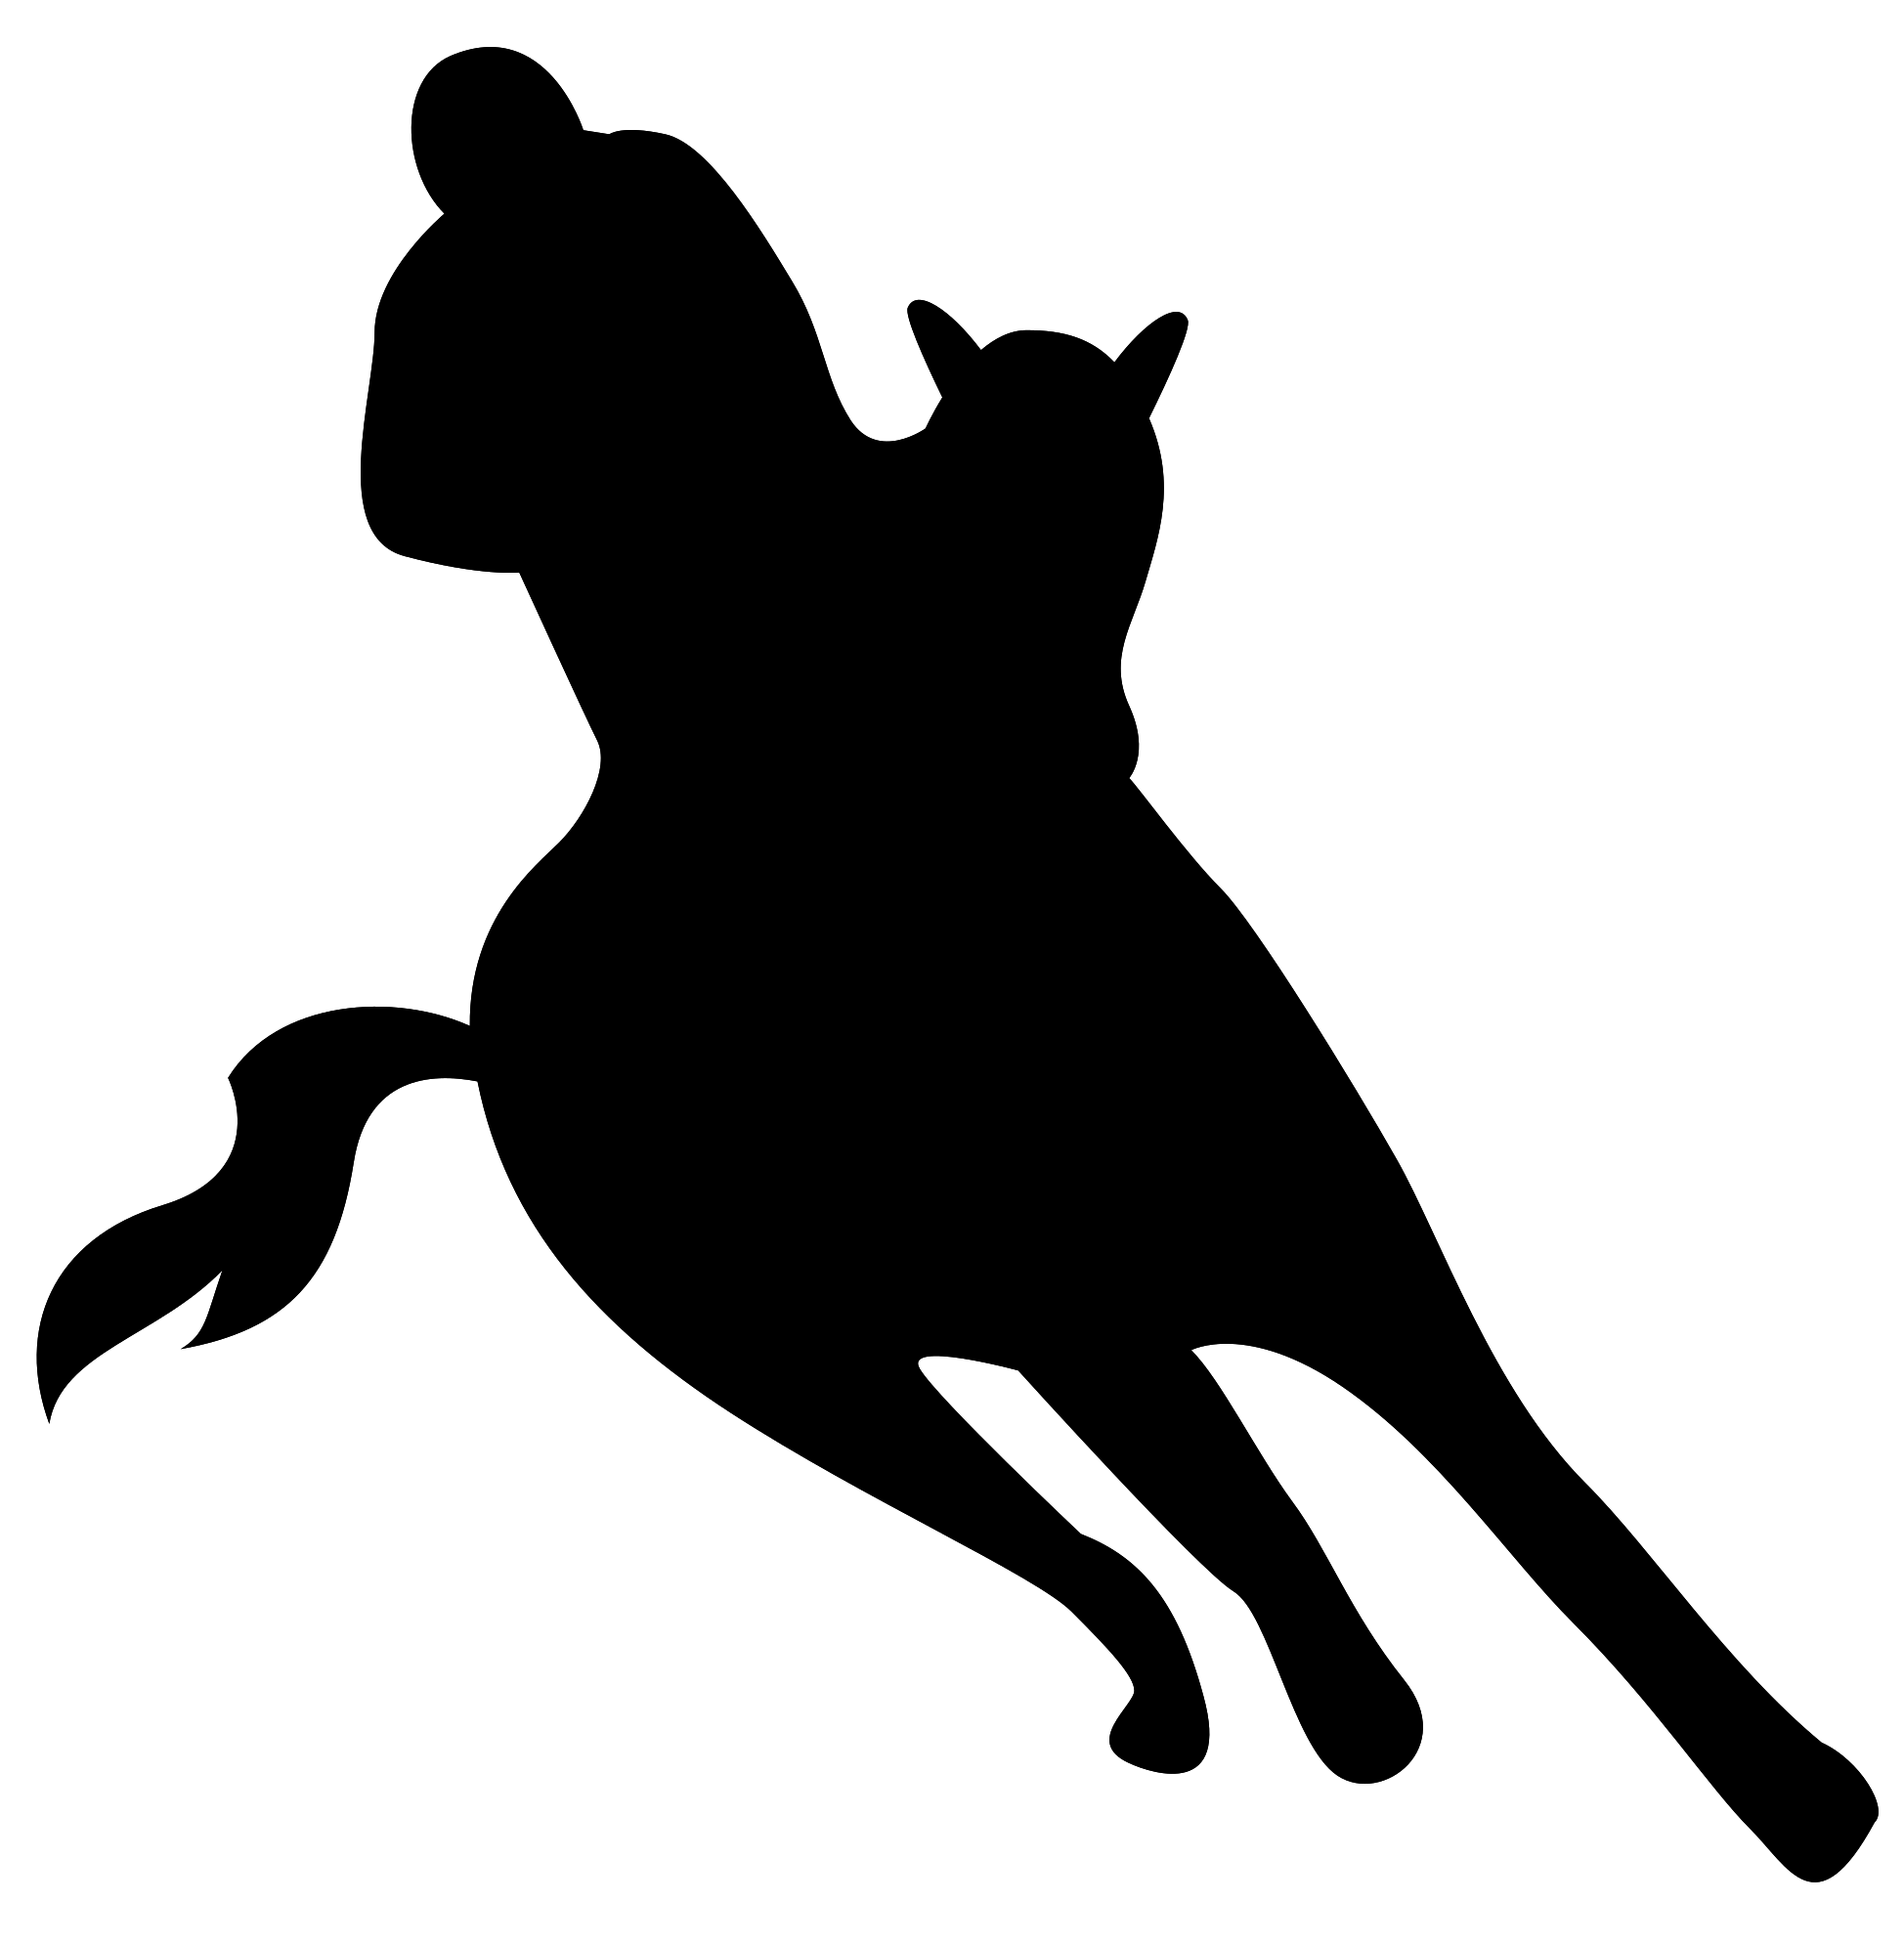 Image de PNG de silhouette de cow-boy de vecteur